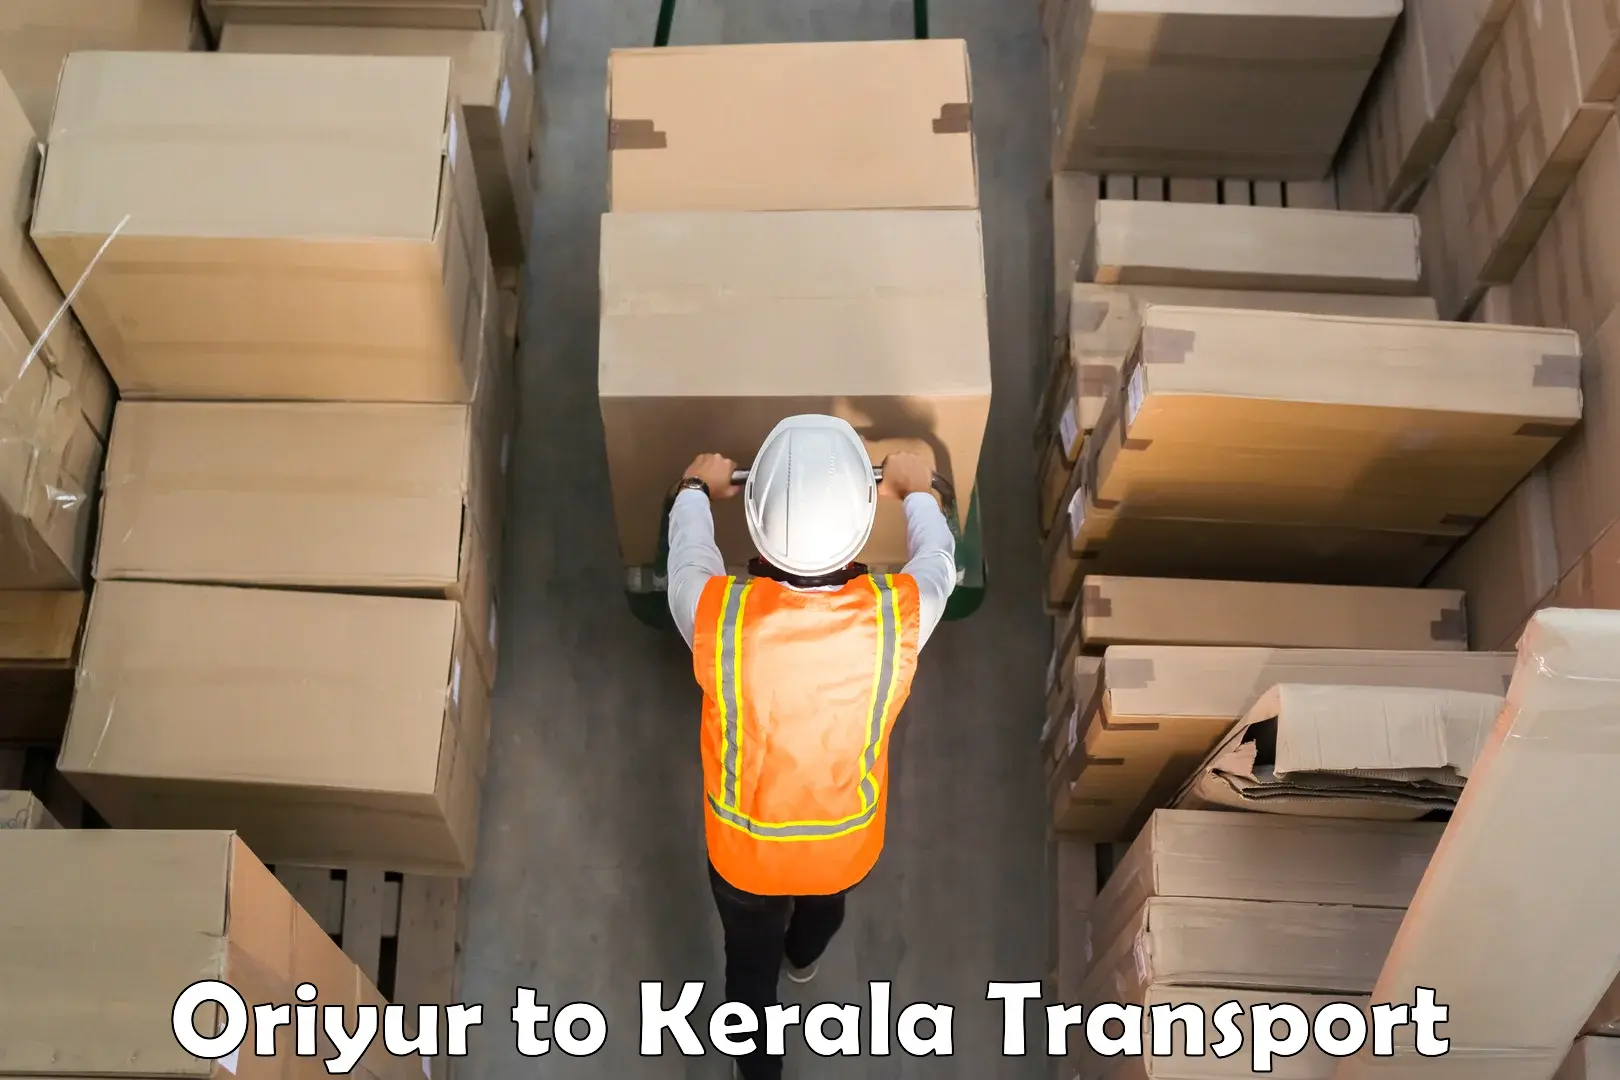 Commercial transport service Oriyur to Mavelikara